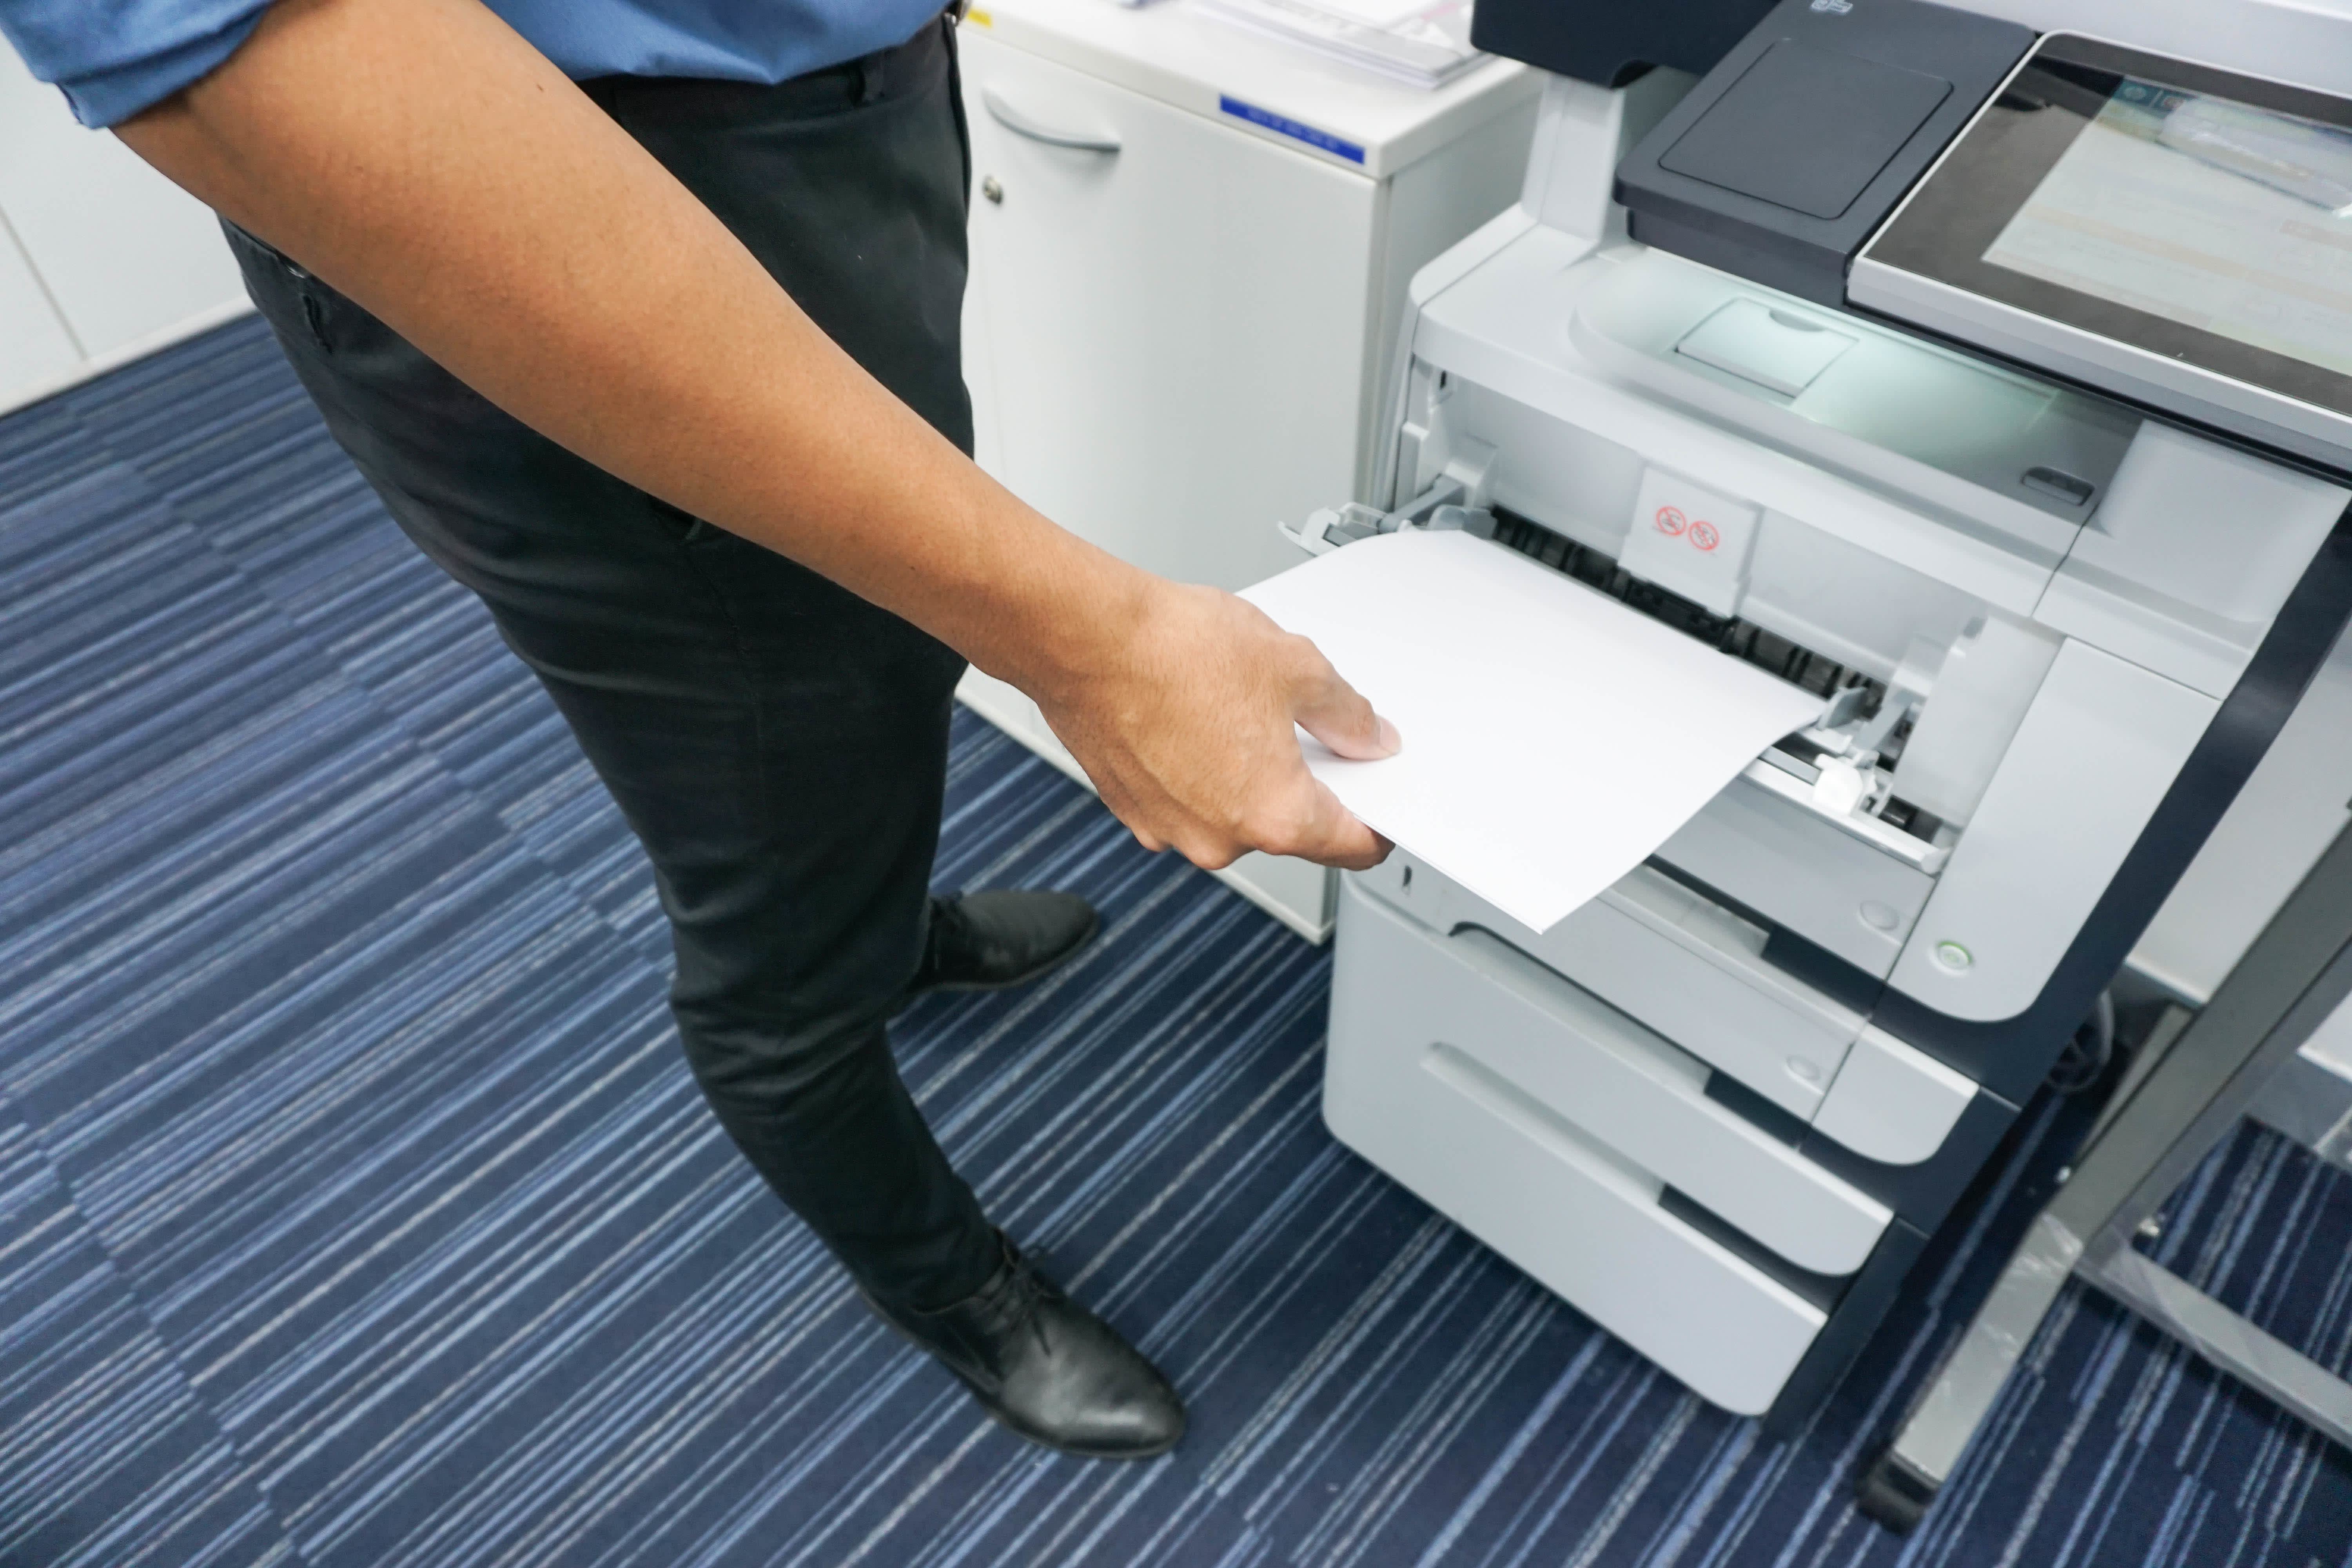 Печать на принтере бланки. Mf264dw термопленка. Принтер офисный. Офисная бумага для принтера. Принтер для печатания документов и бумаг.